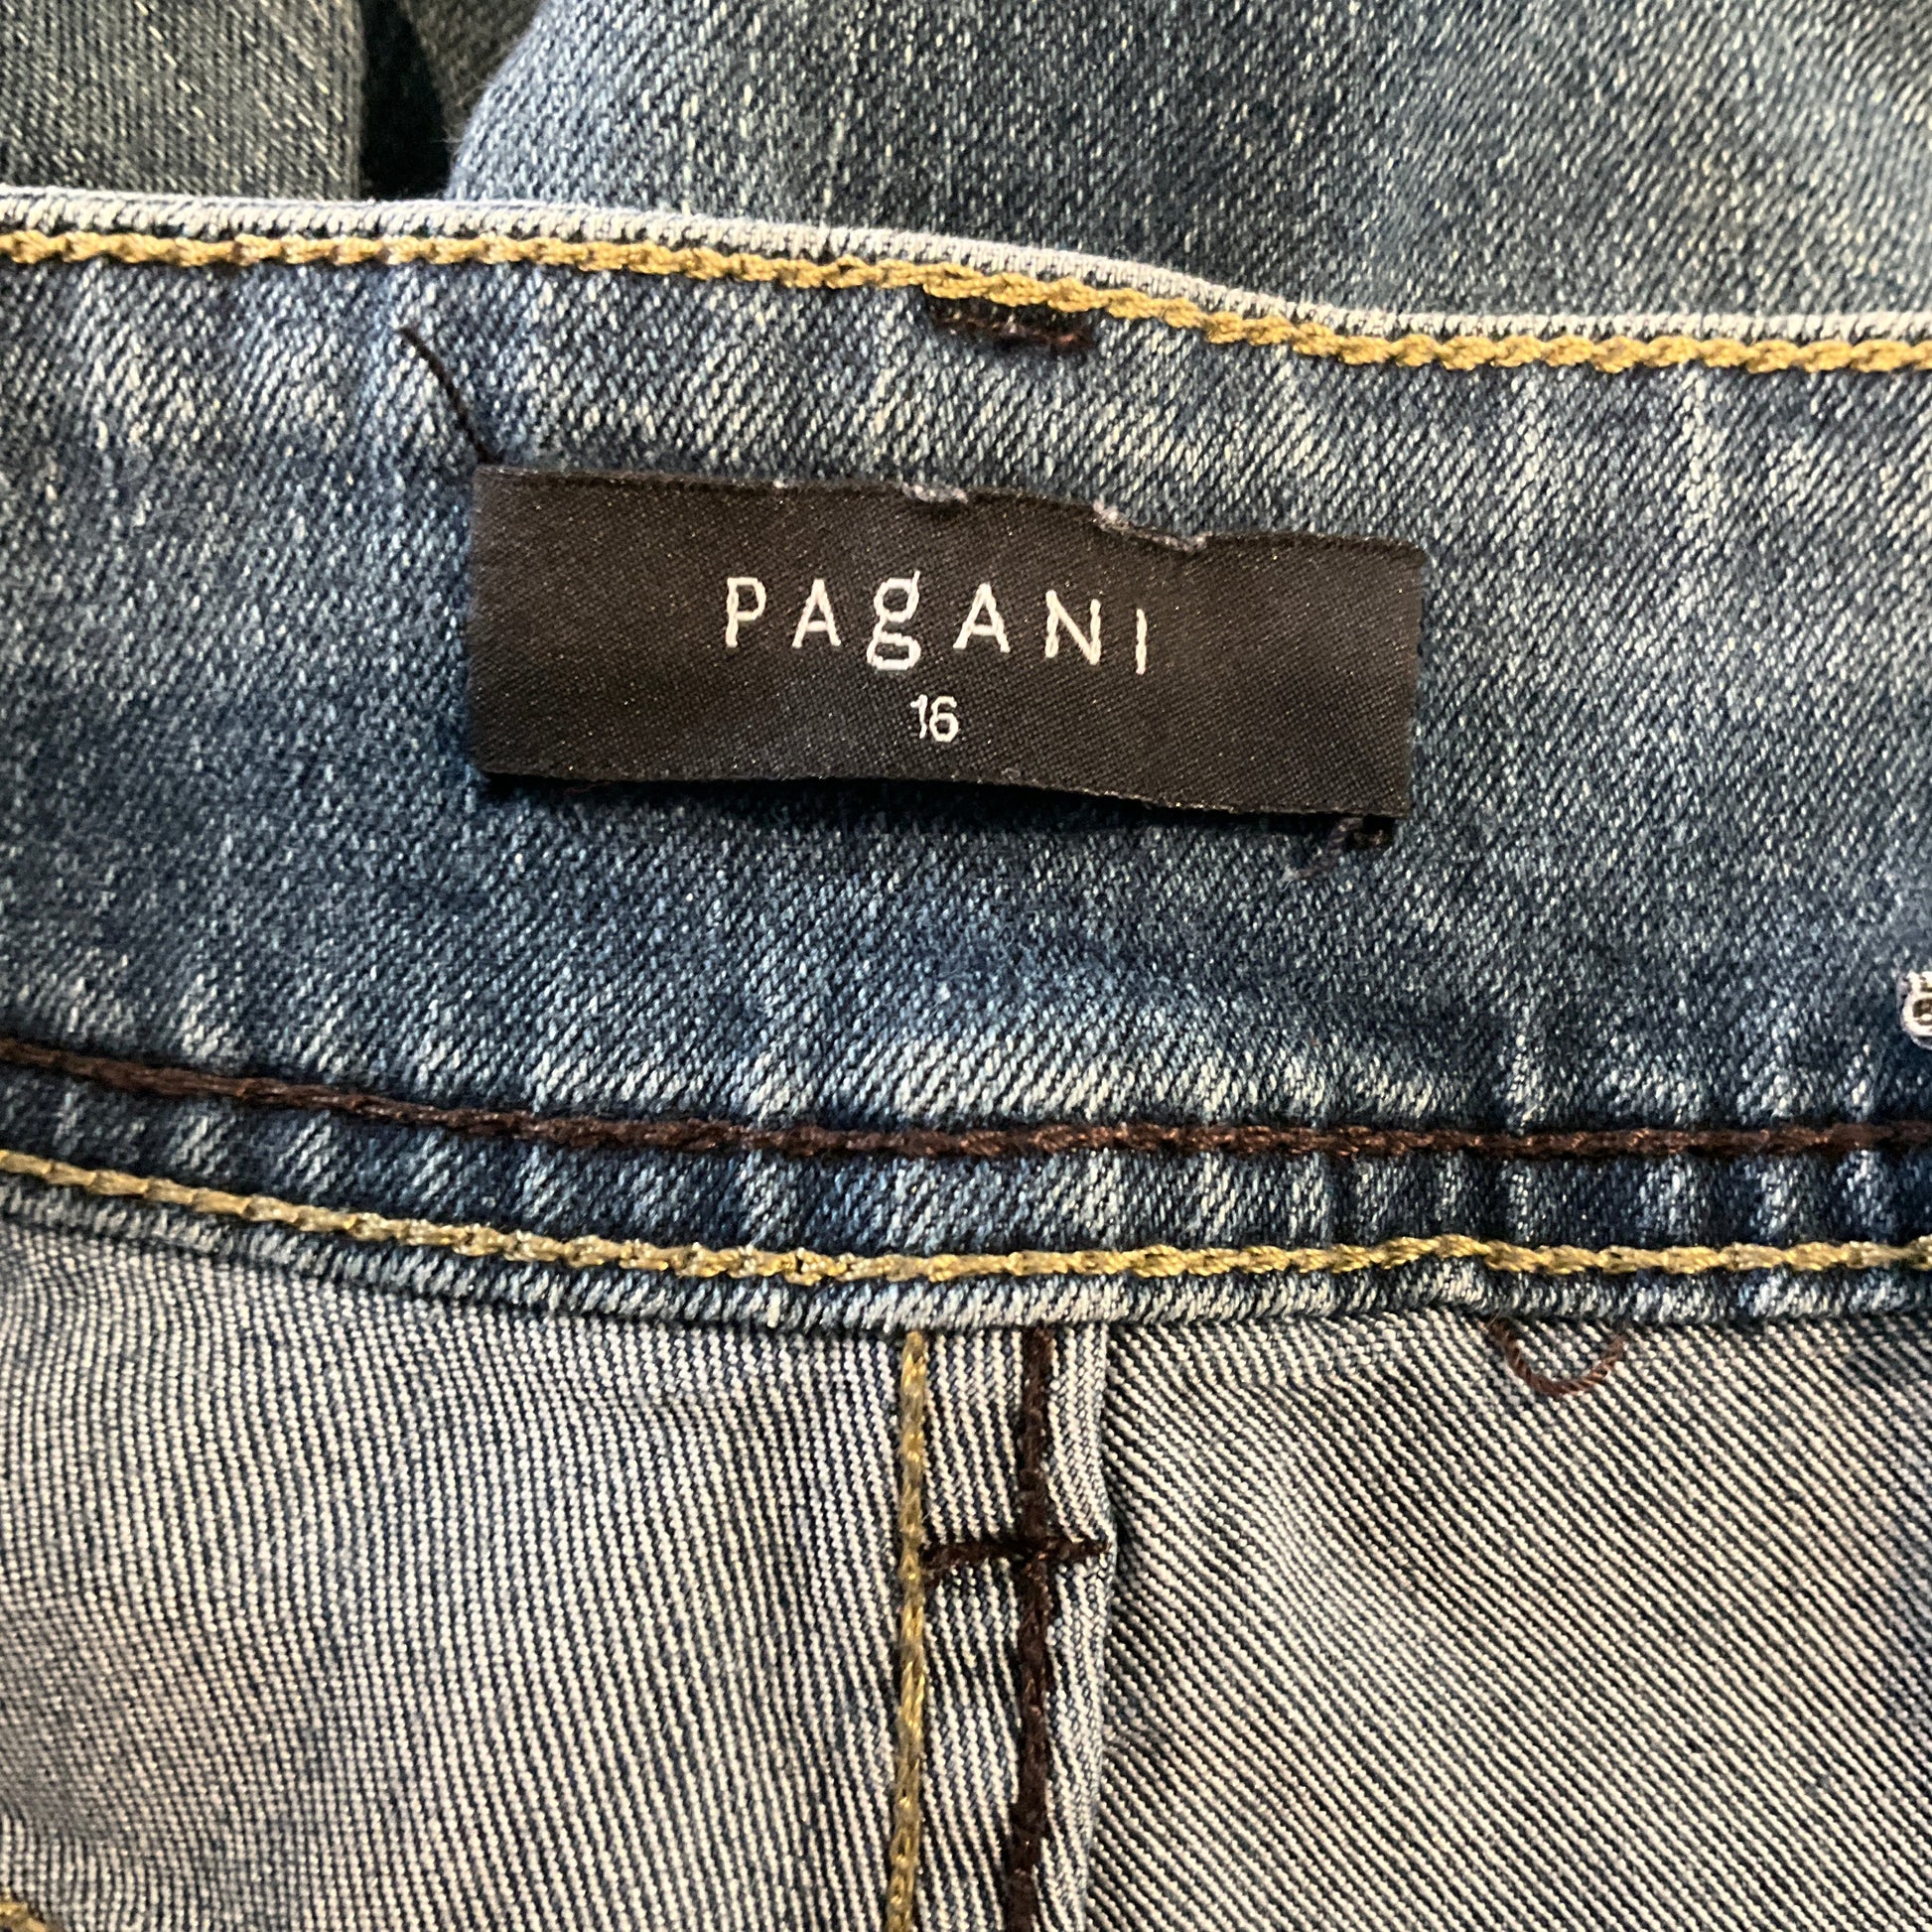 Pagani - Jeans Pants